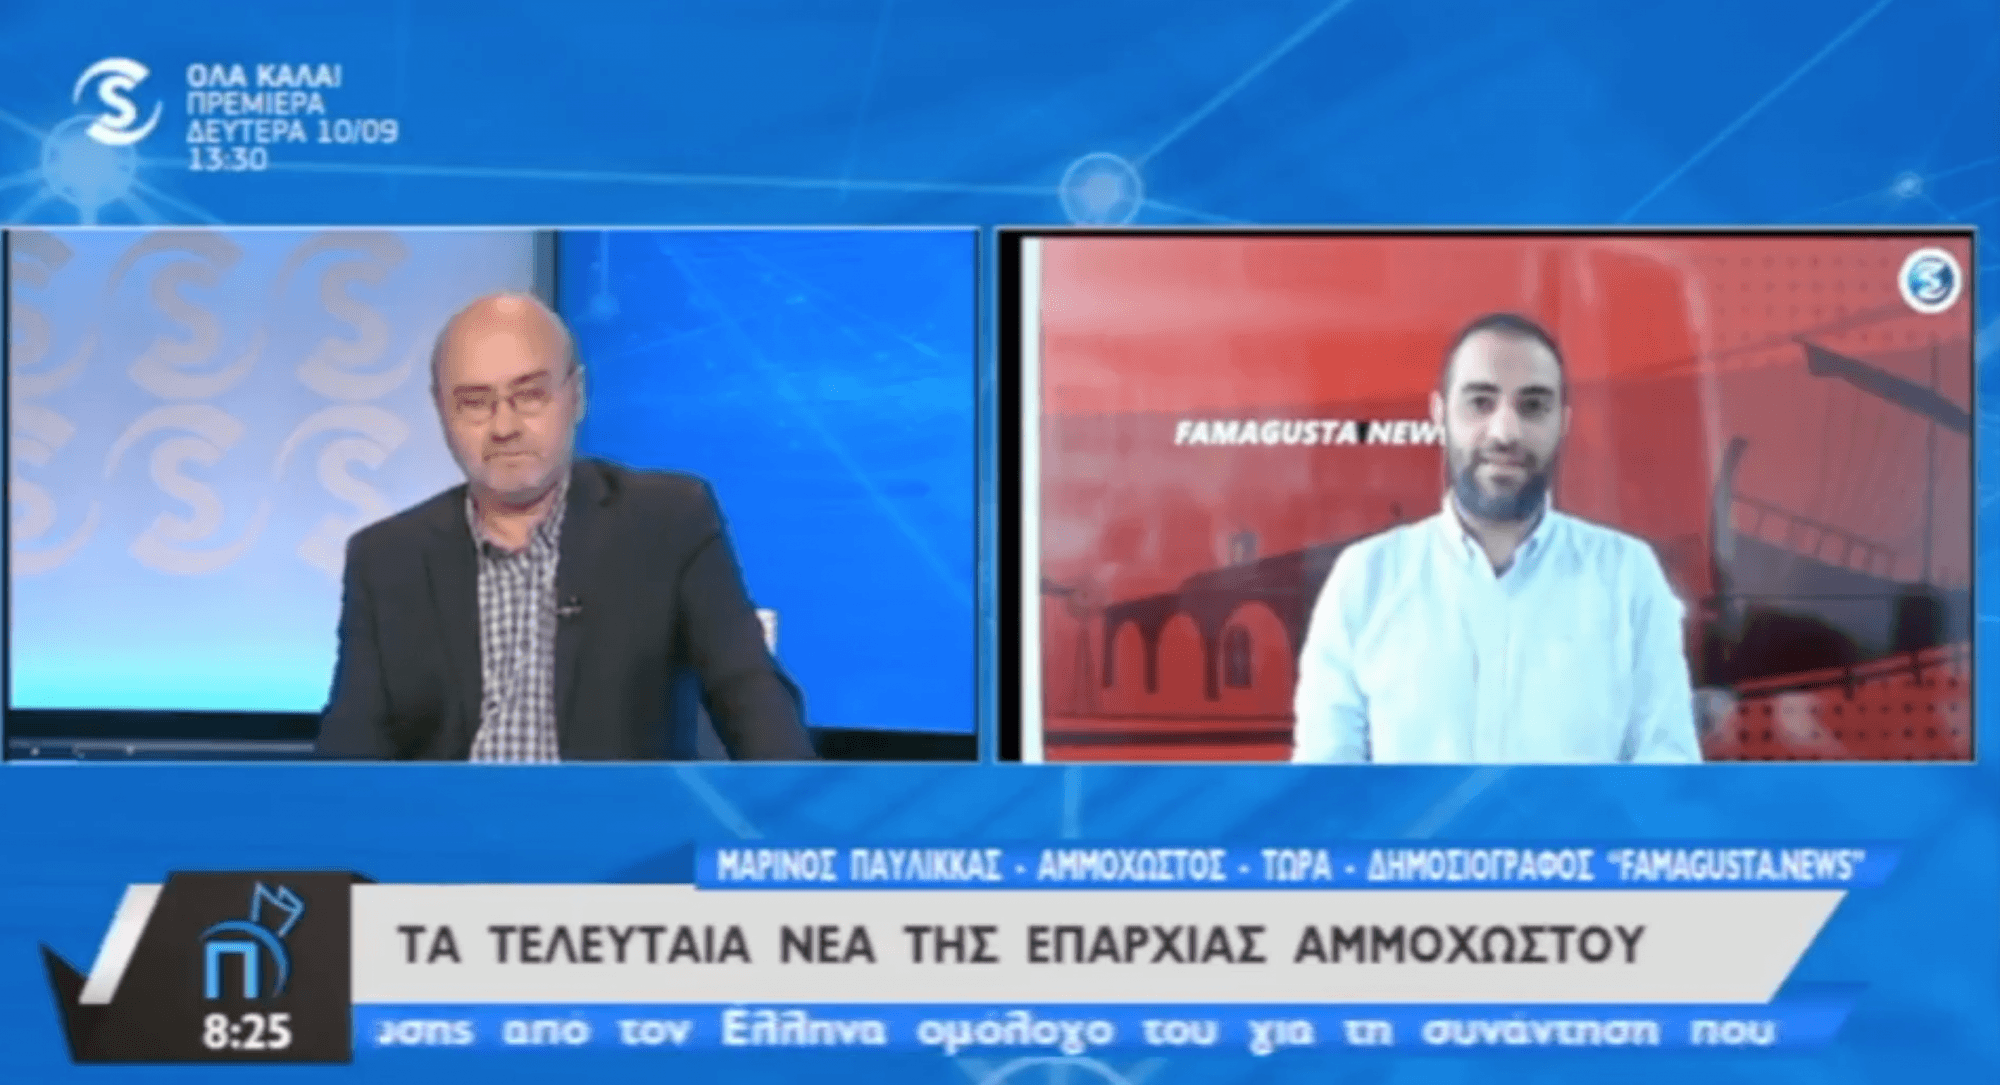 Snapshot 2018 09 10 15.14.45 FamagustaNews